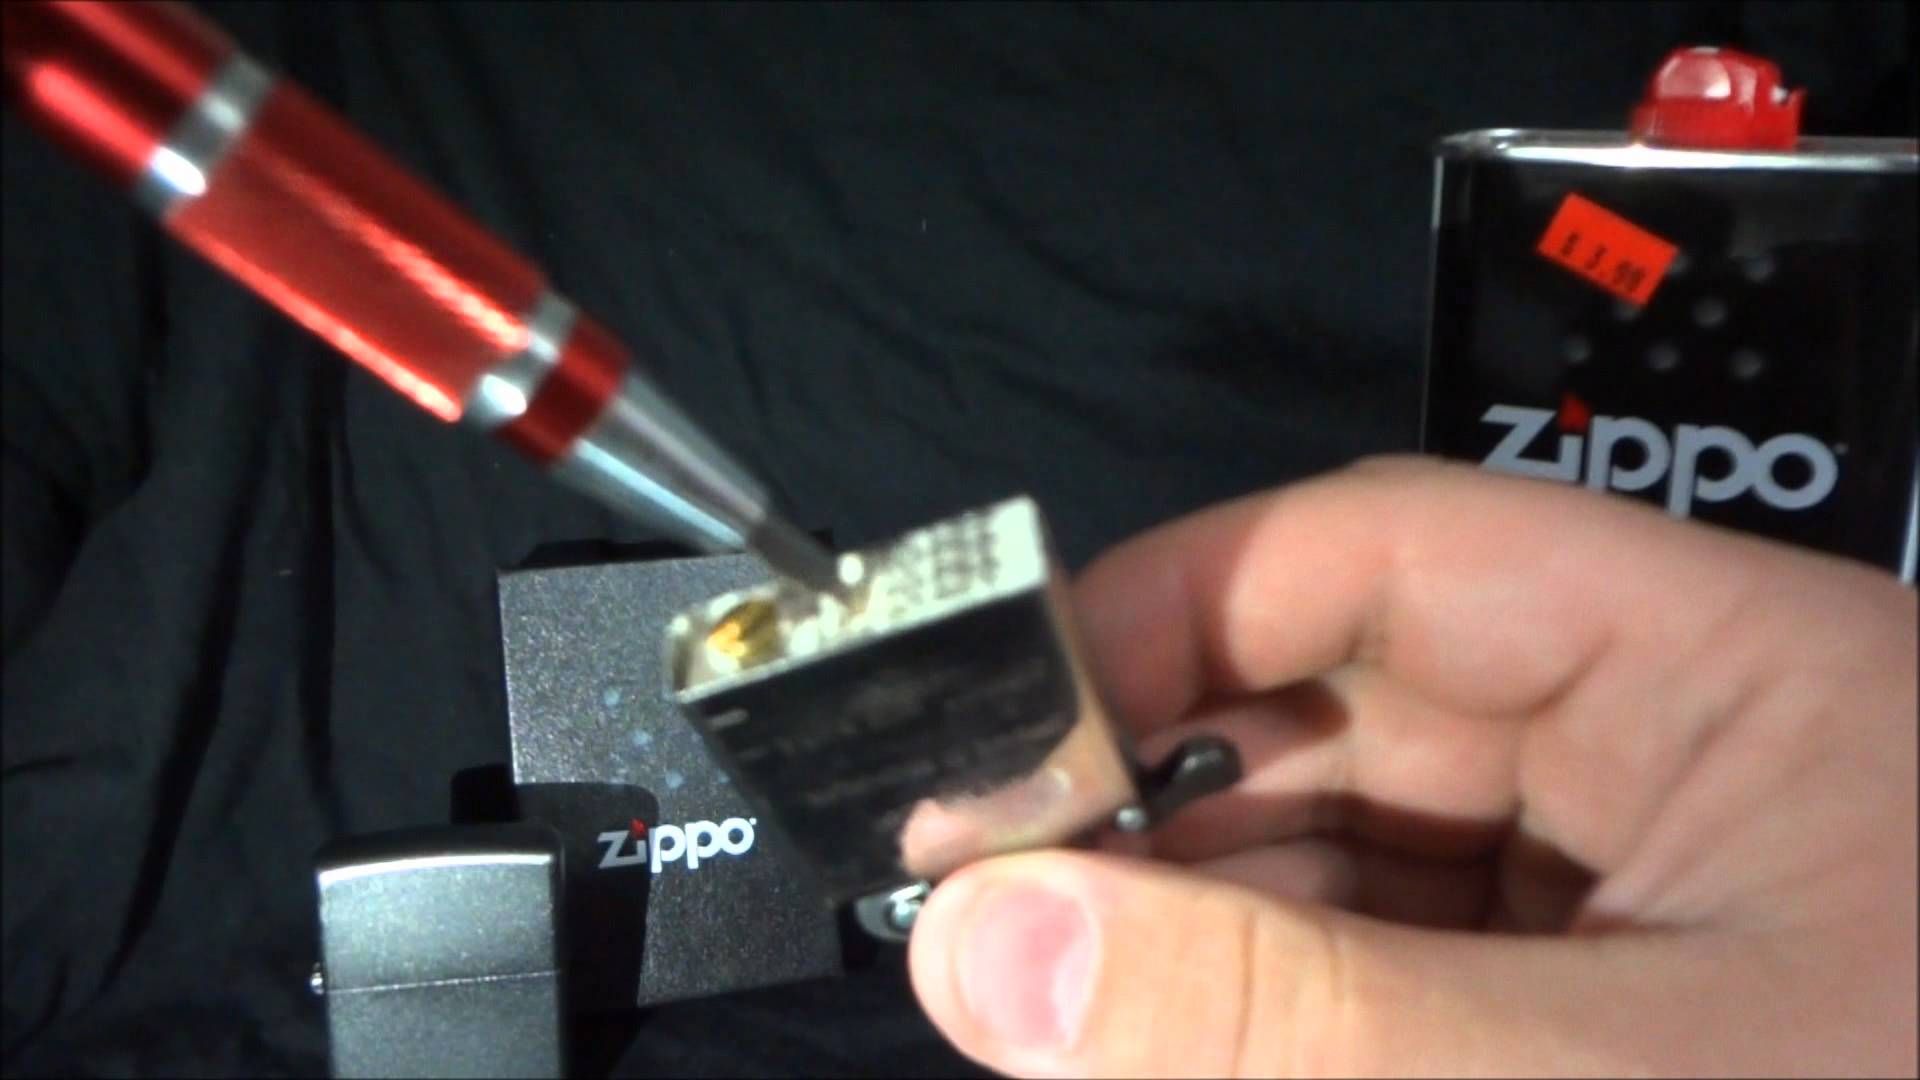 How To Fill A Zippo Butane Lighter